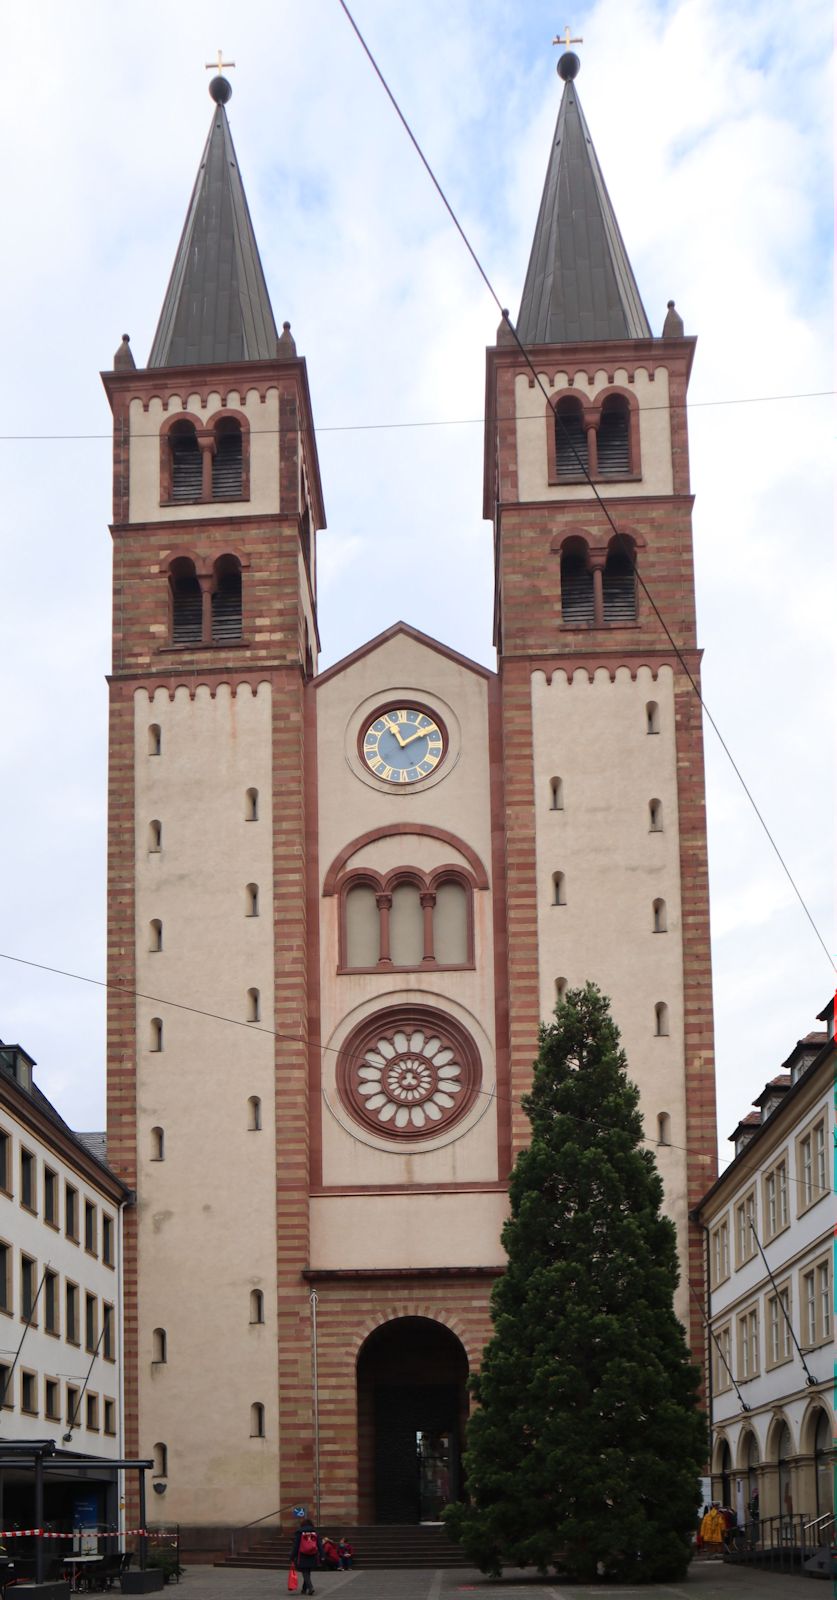 Dom in Würzburg, ursprünglich dem Salvator - Erlöser - geweiht, dann Kilian, von etwa 1000 bis 1967 dem Apostel Andreas, seitdem wieder Kilian und zudem Kolonat und Totnan